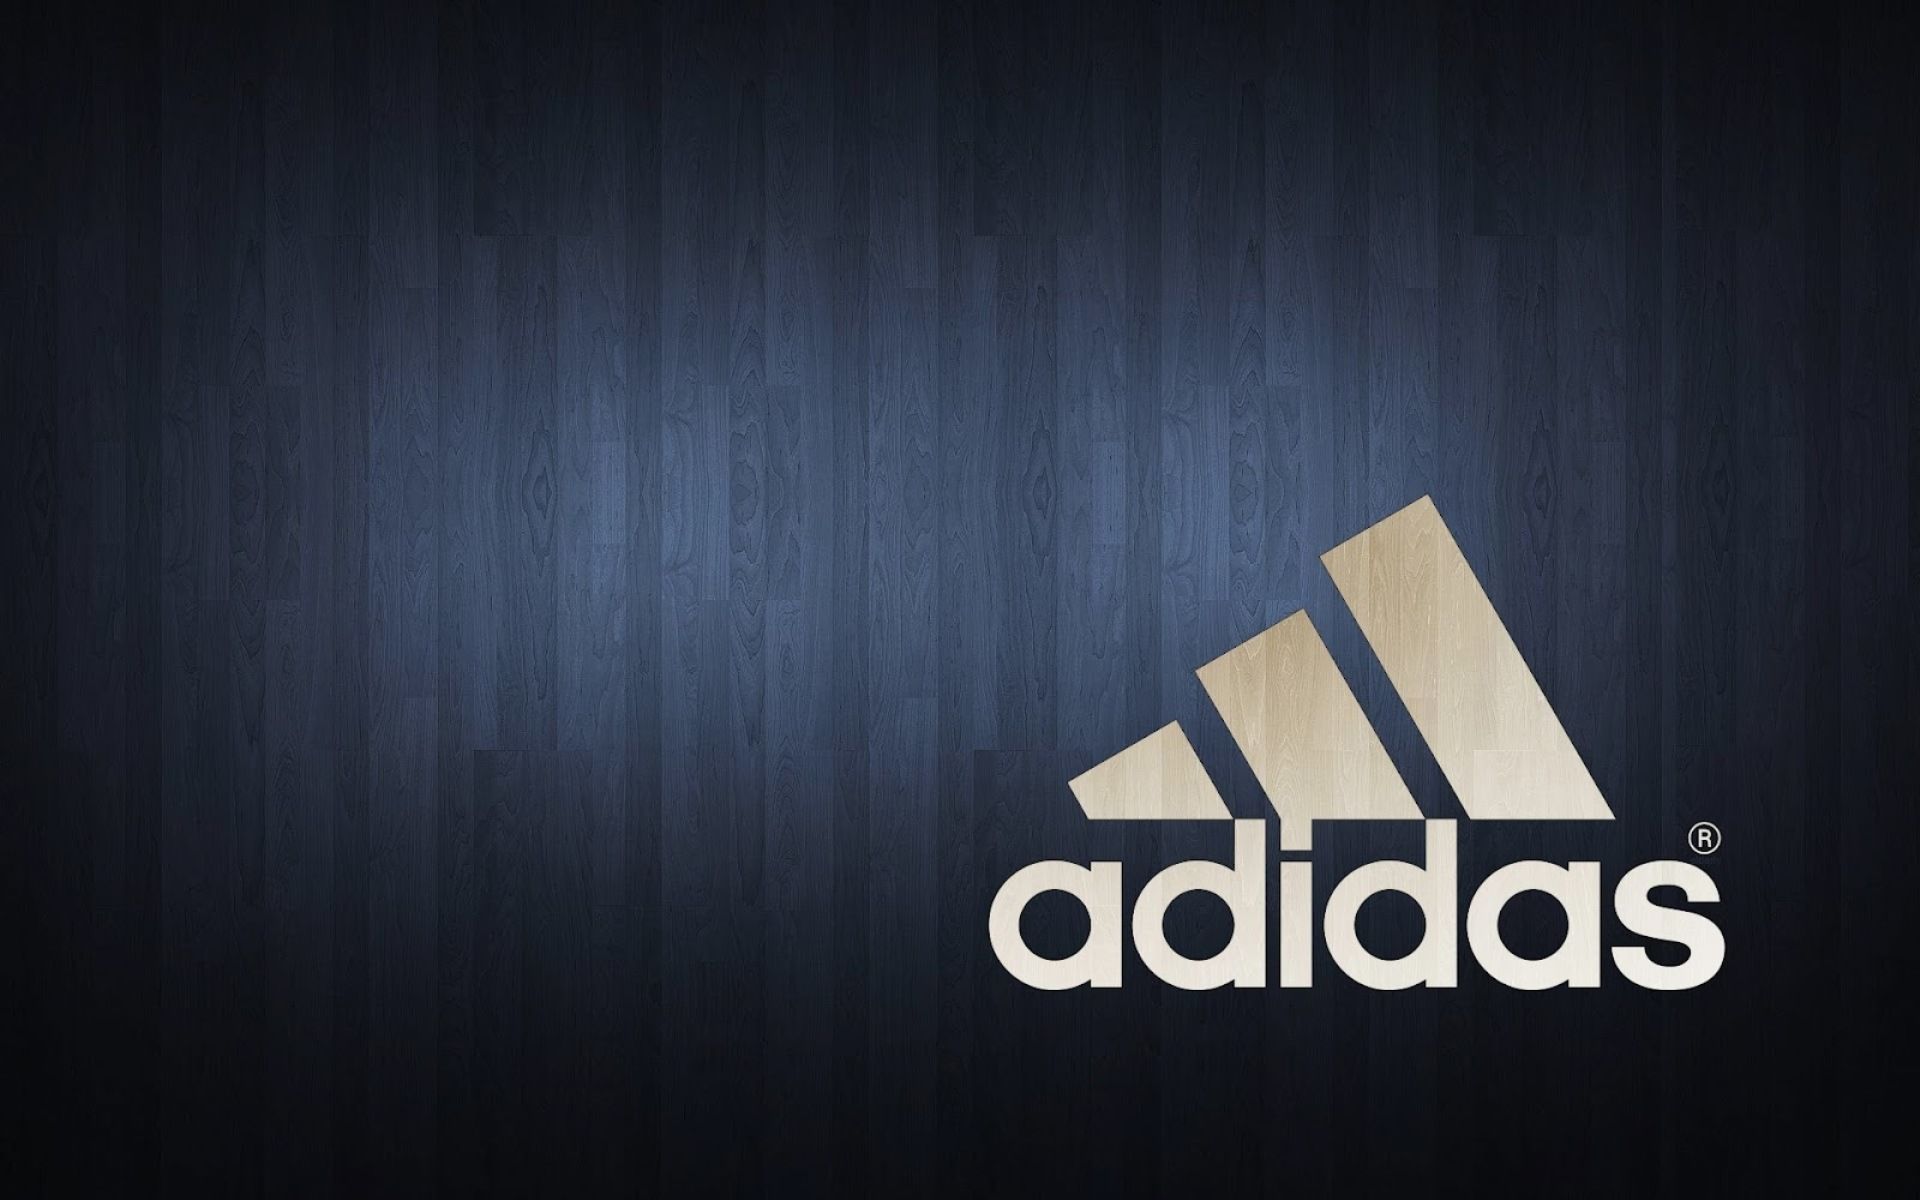 Adidas Basketball Wallpapers